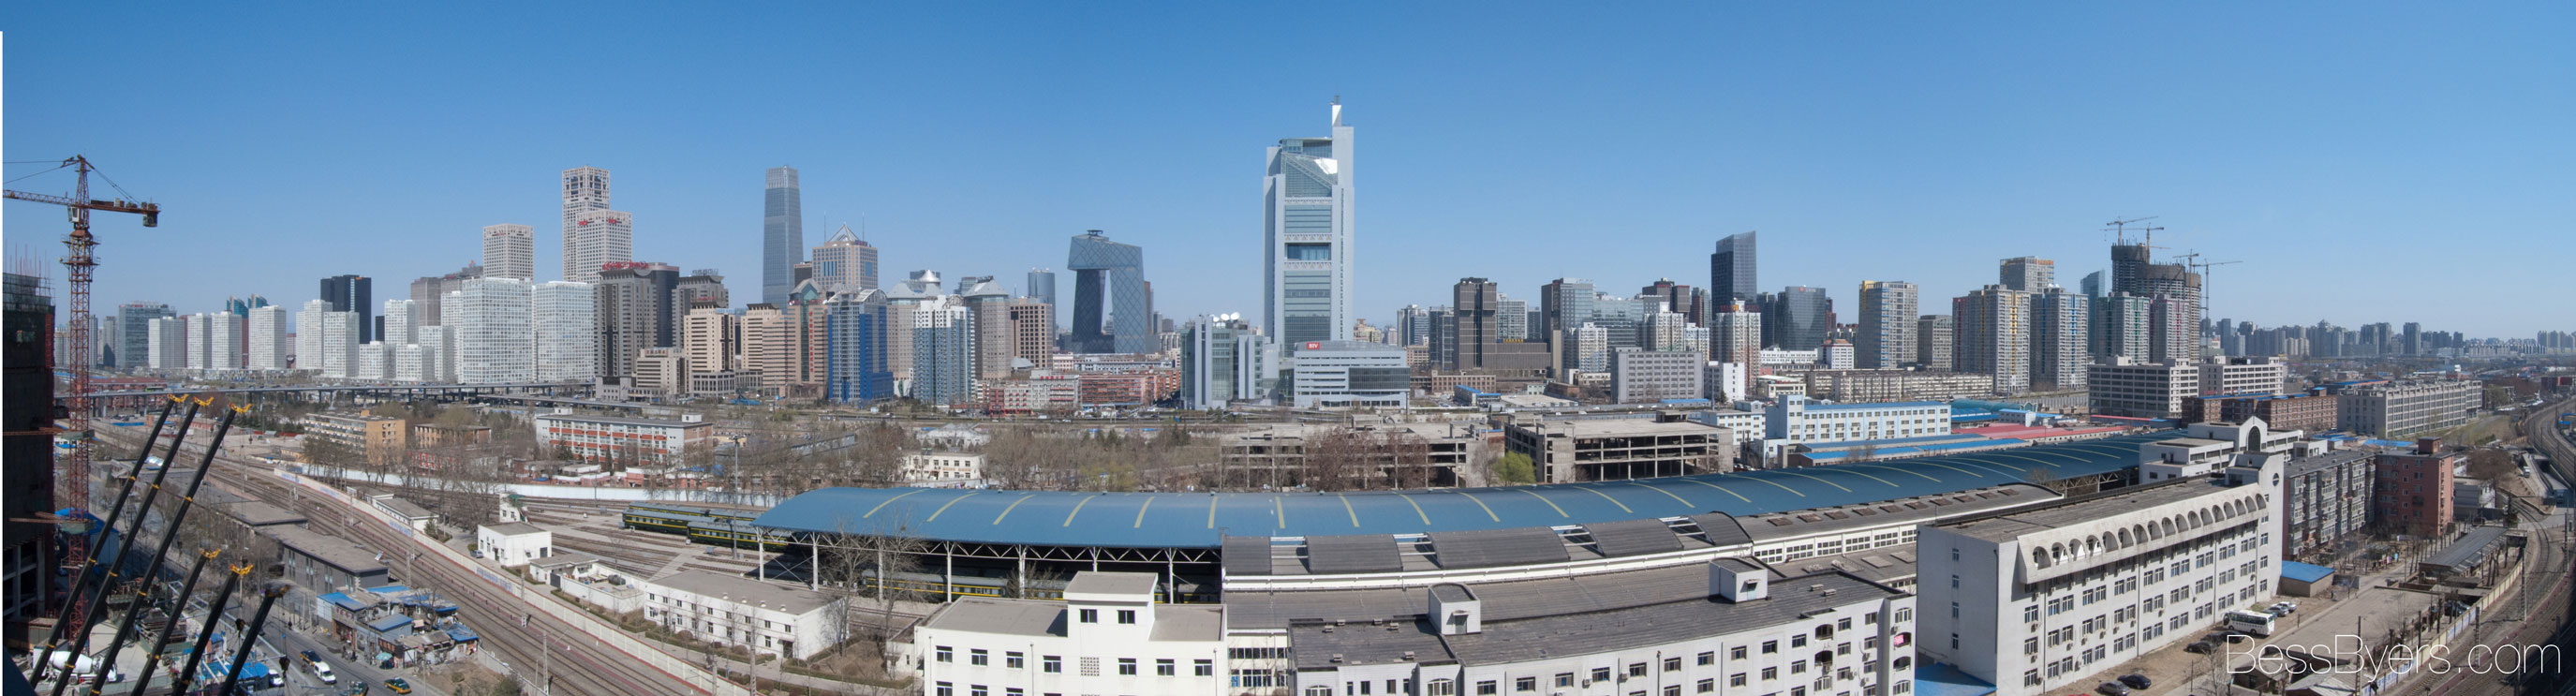 Beijing panorama photo